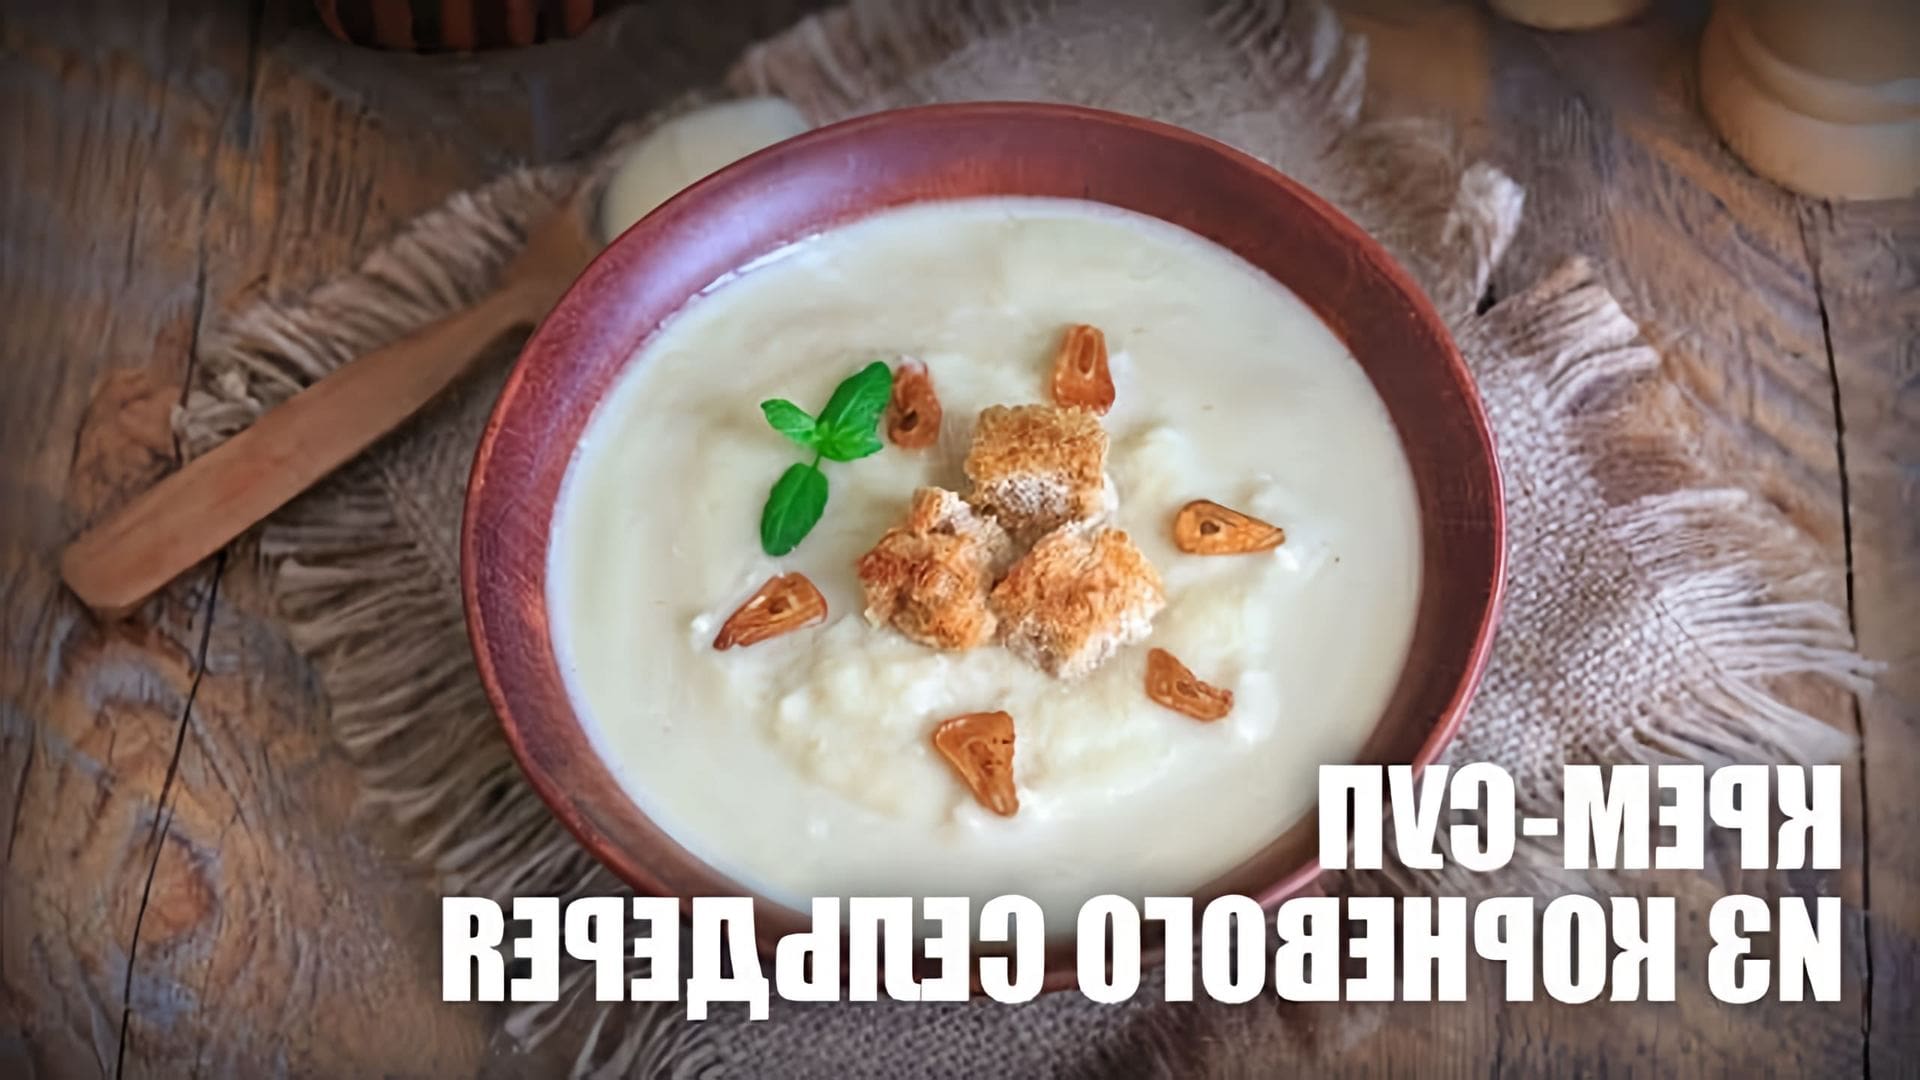 Крем-суп из корневого сельдерея — видео рецепт

В этом видео-ролике вы увидите, как приготовить вкусный и полезный крем-суп из корневого сельдерея